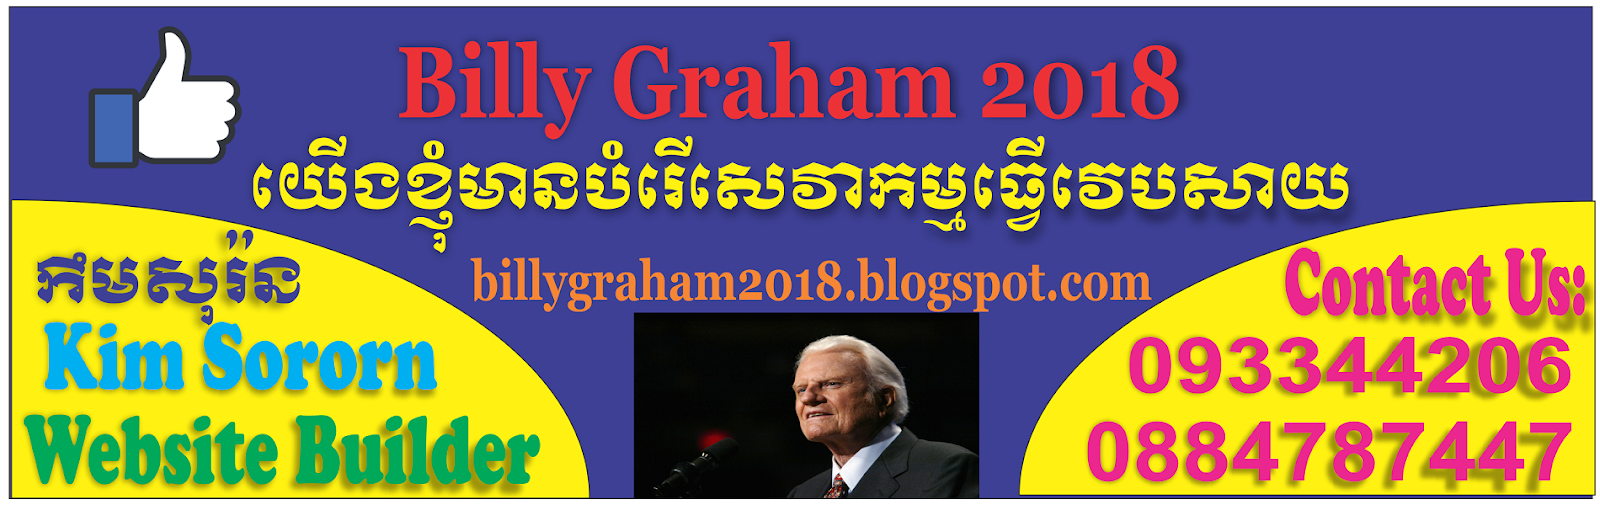 Billy Graham 2018